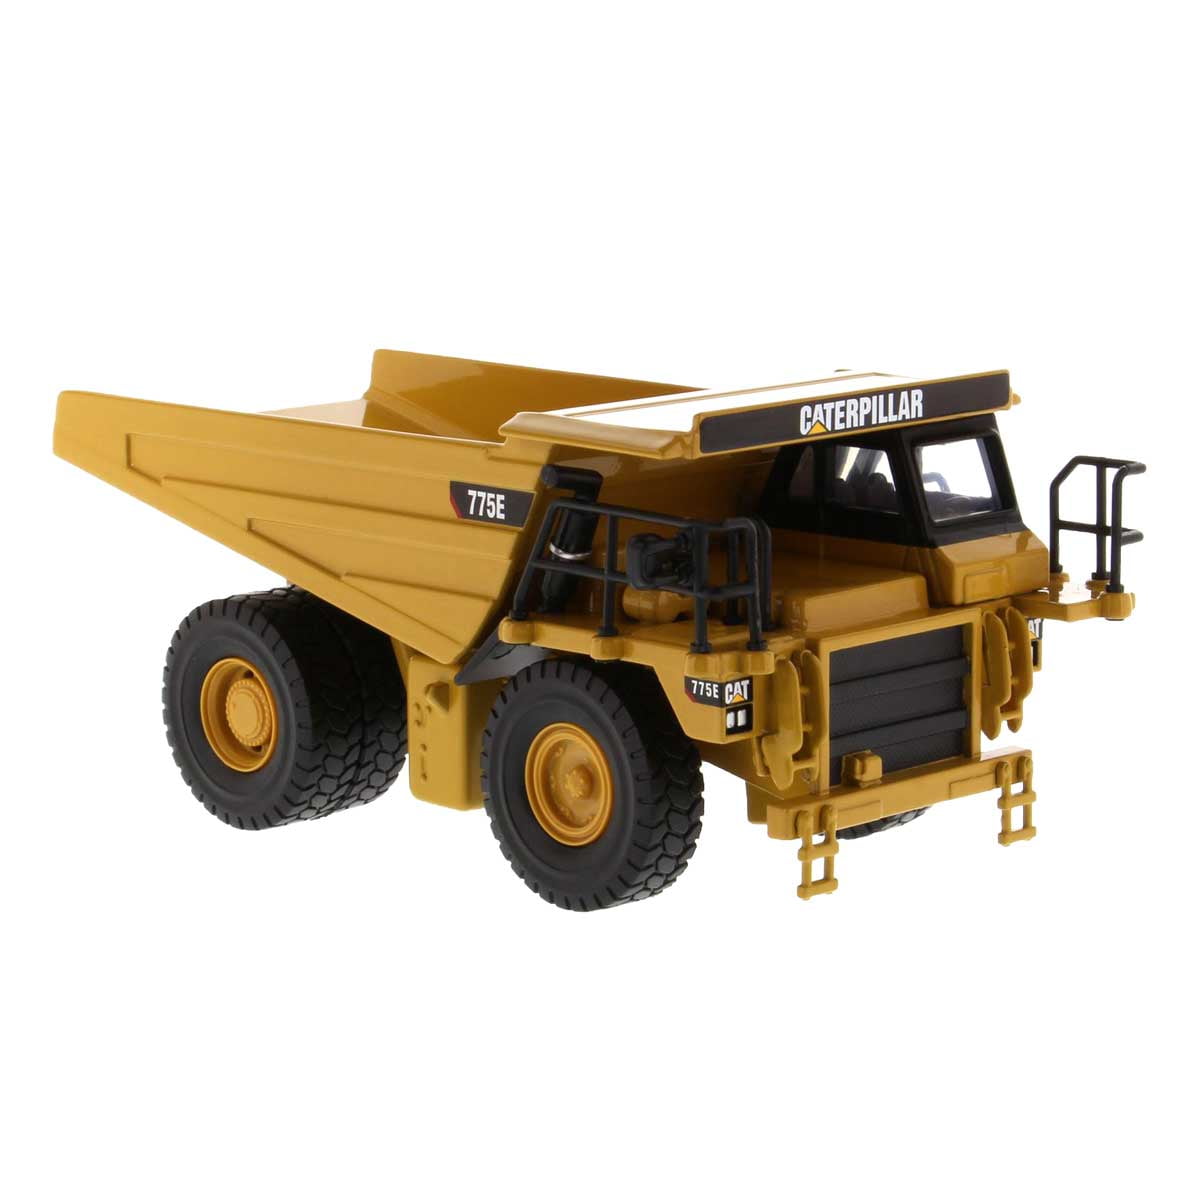 CAT Caterpillar 775E Off-Highway Dump Truck "Play & Collect!" Series 1-64 Diecas